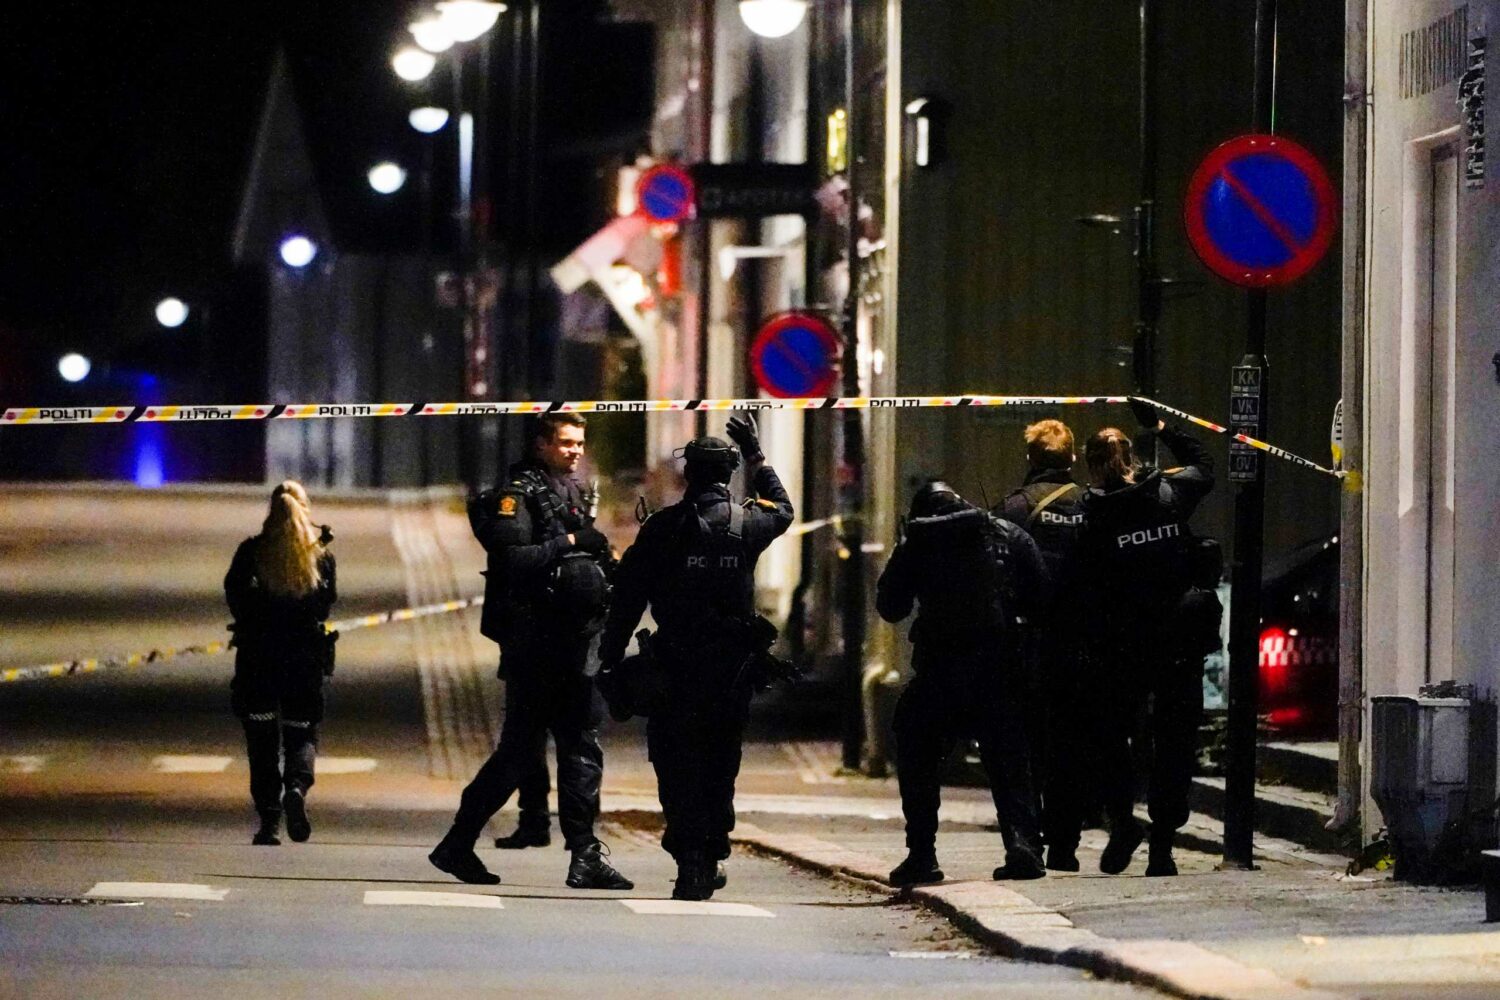 Νορβηγία: Η επίθεση με τόξο και βέλη σχετίζεται πιθανόν με ψυχική ασθένεια, σύμφωνα με την αστυνομία